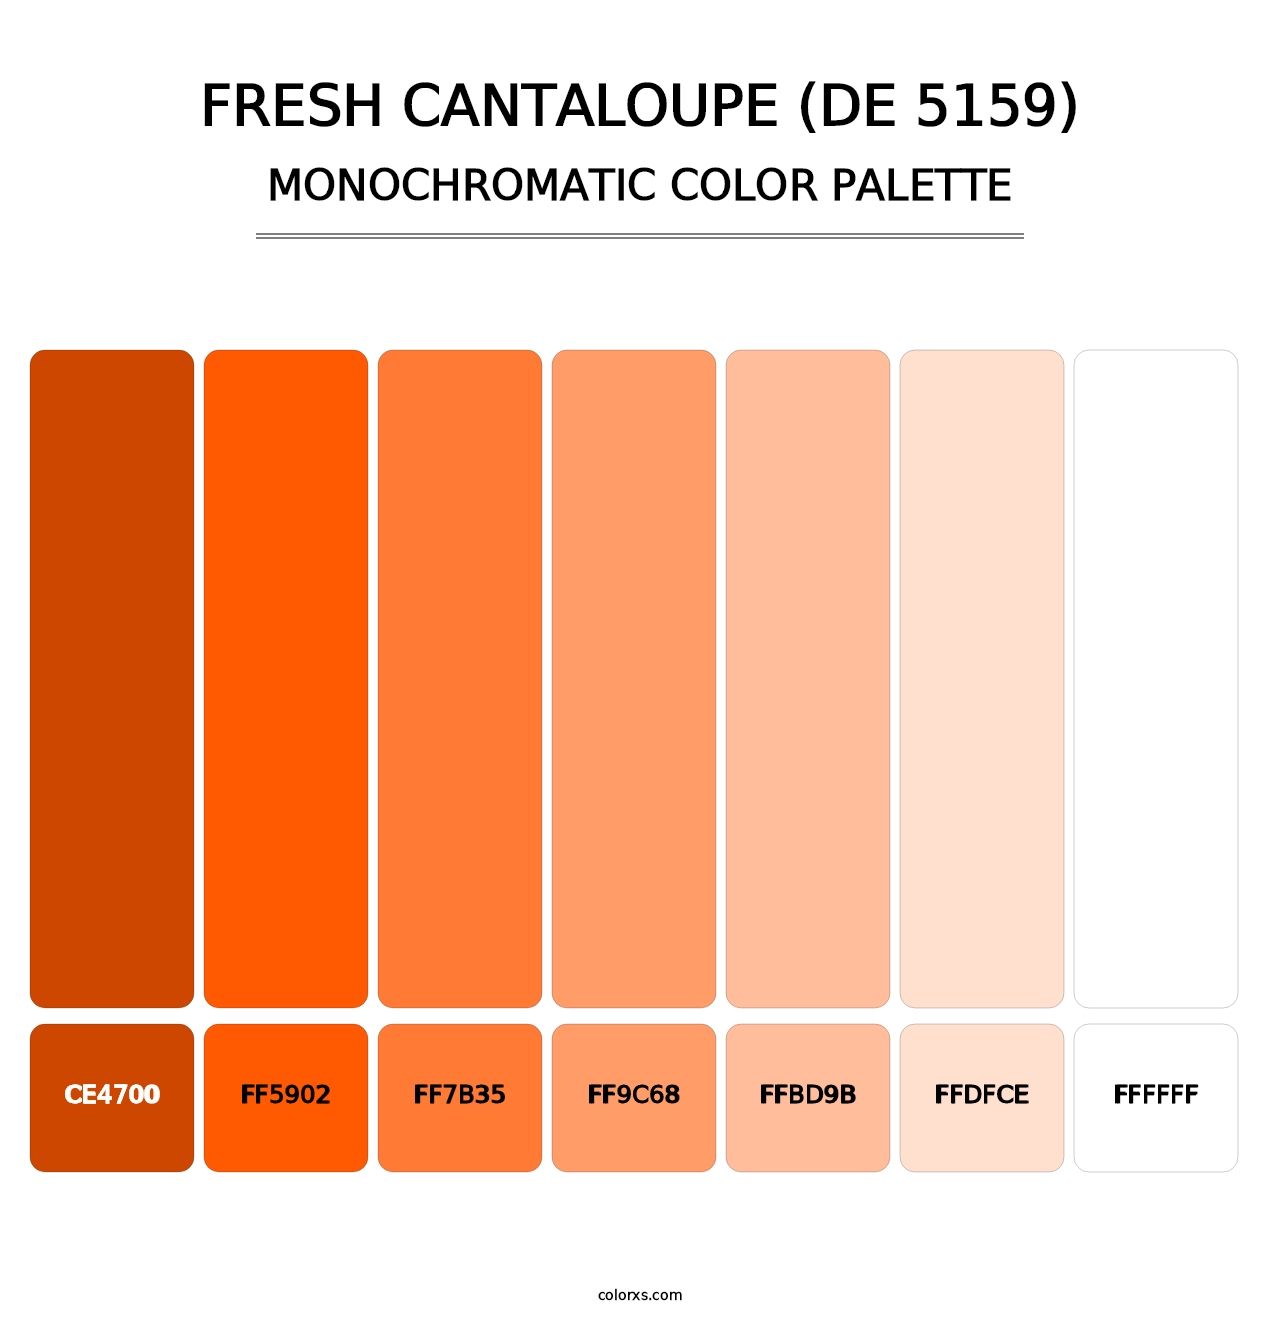 Fresh Cantaloupe (DE 5159) - Monochromatic Color Palette